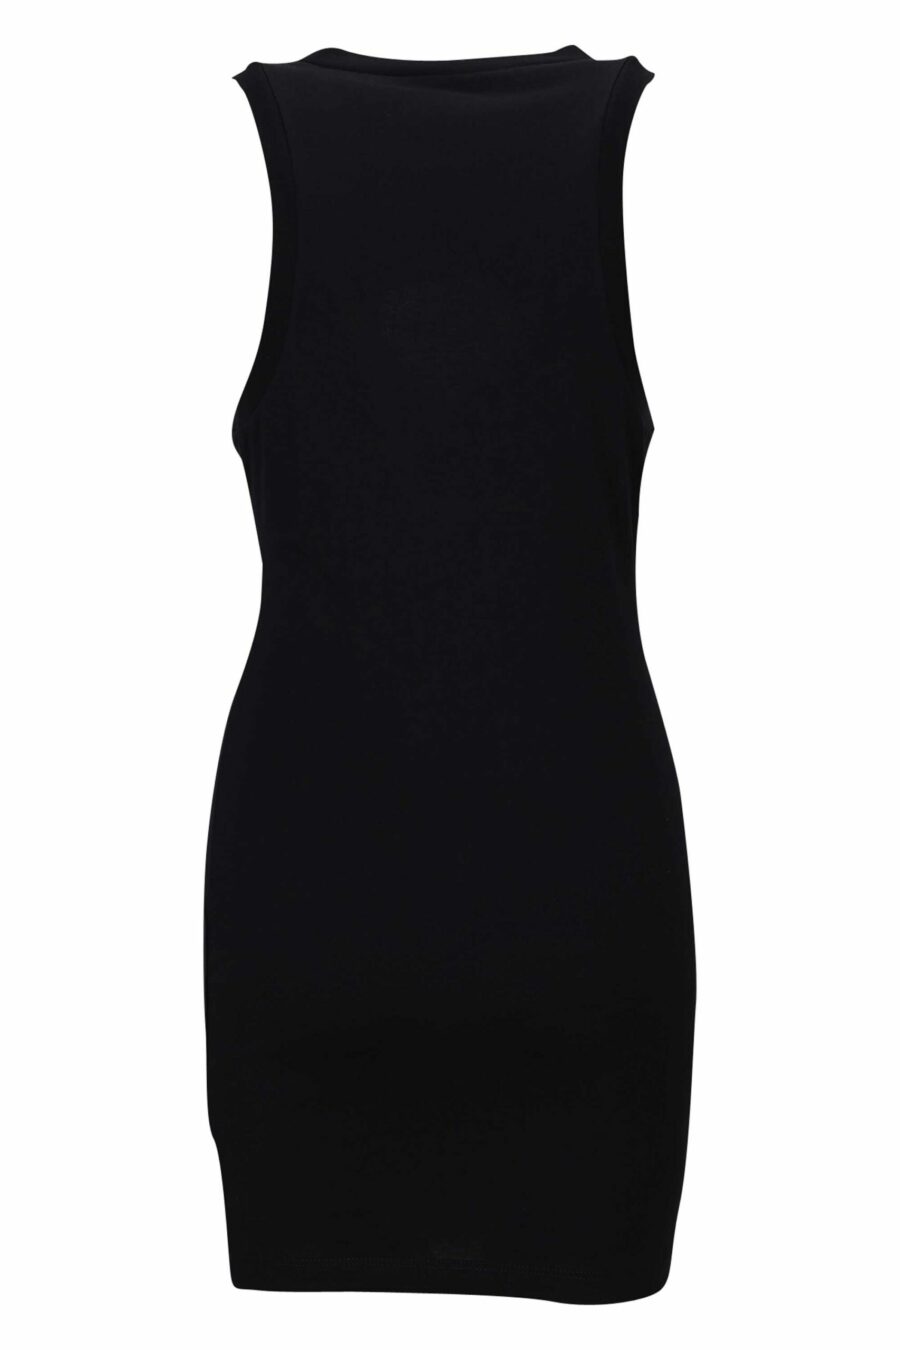 Schwarzes Kleid mit transparentem Herz-Logo in der Mitte - 8054148299798 1 skaliert